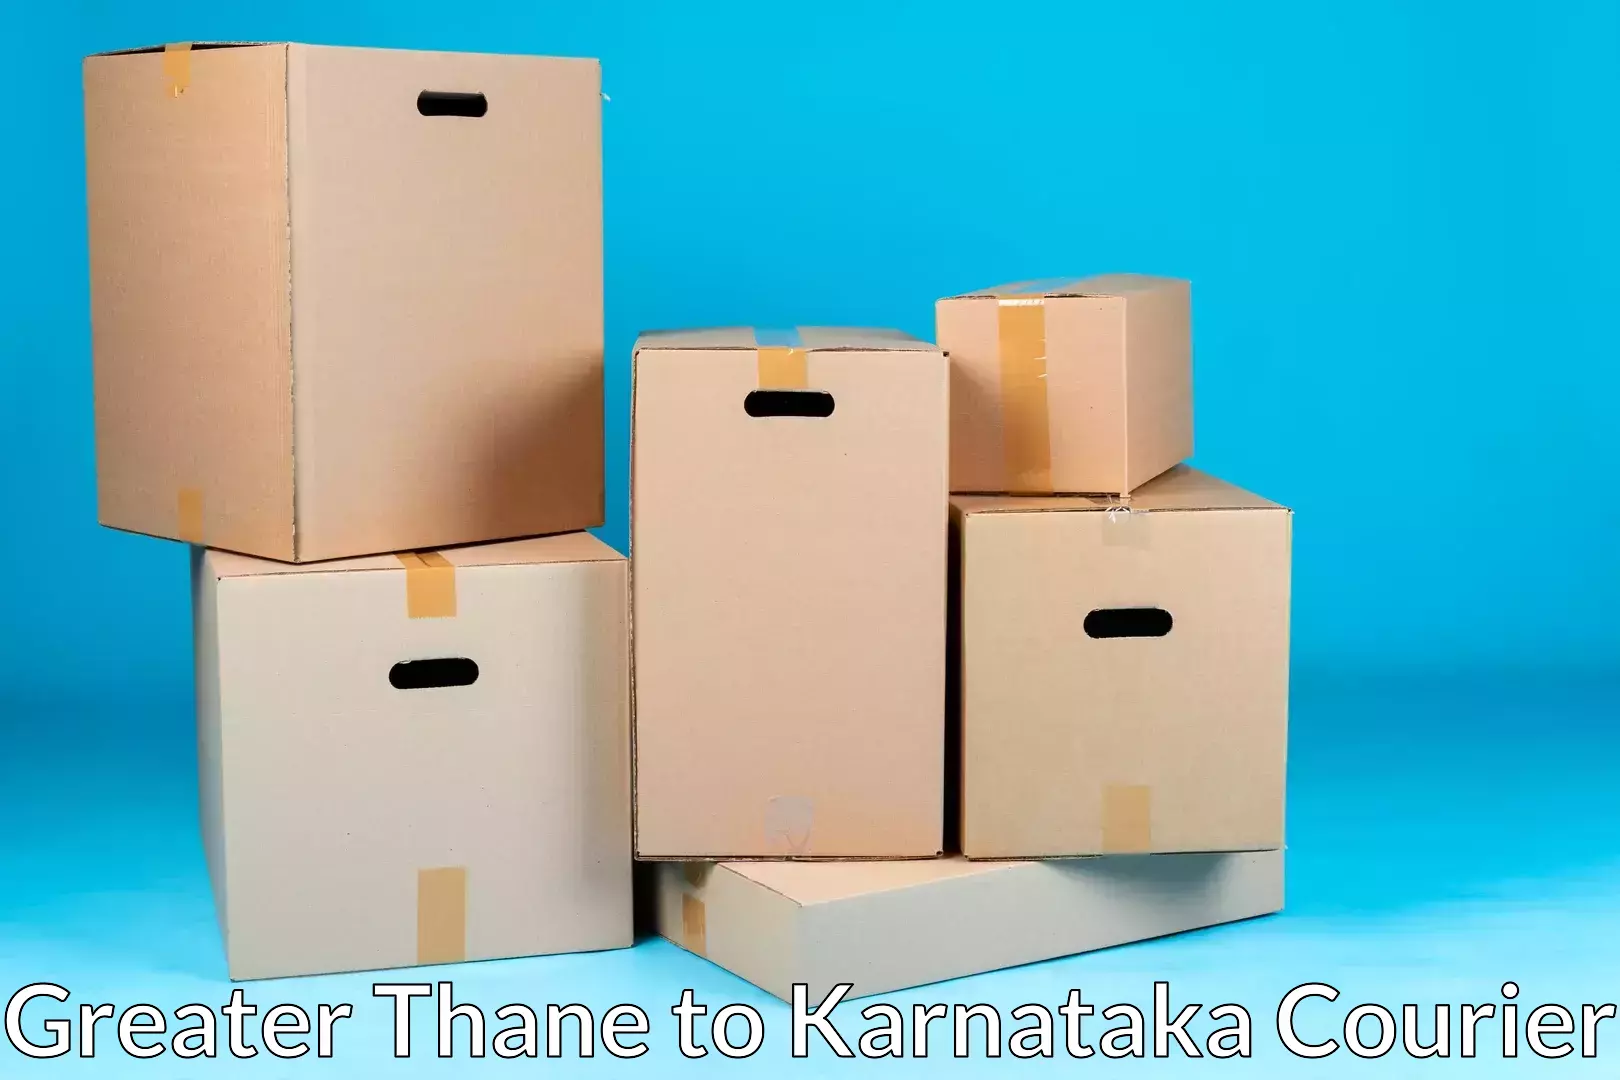 Professional movers Greater Thane to Kalaburagi